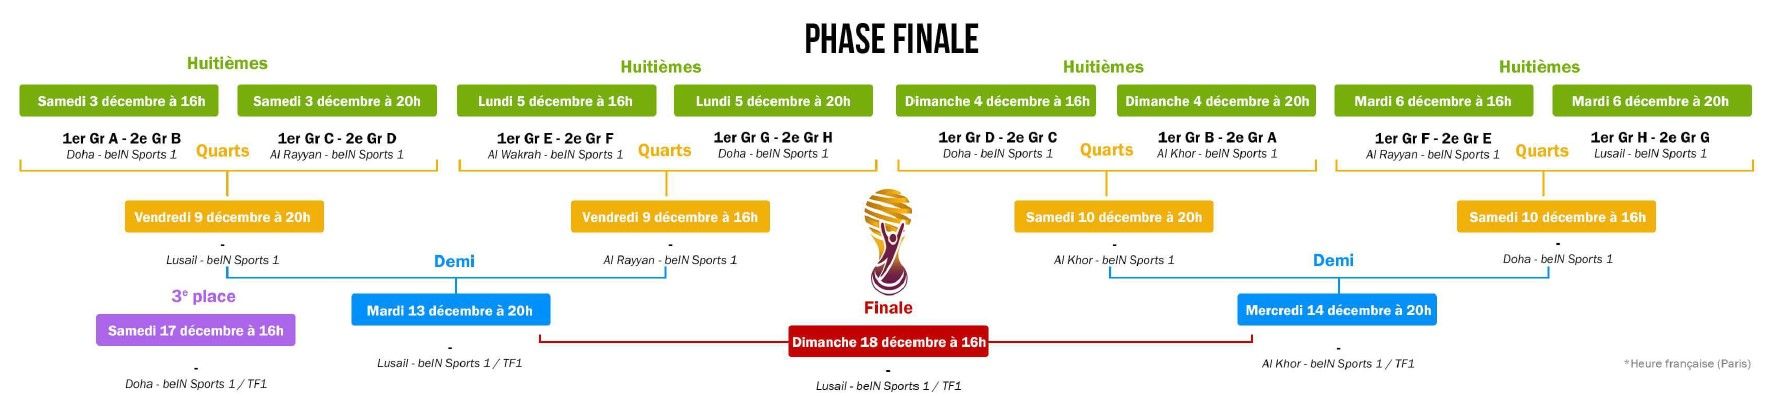 Calendrier de la phase finale de la coupe du monde de football Qatar 2022